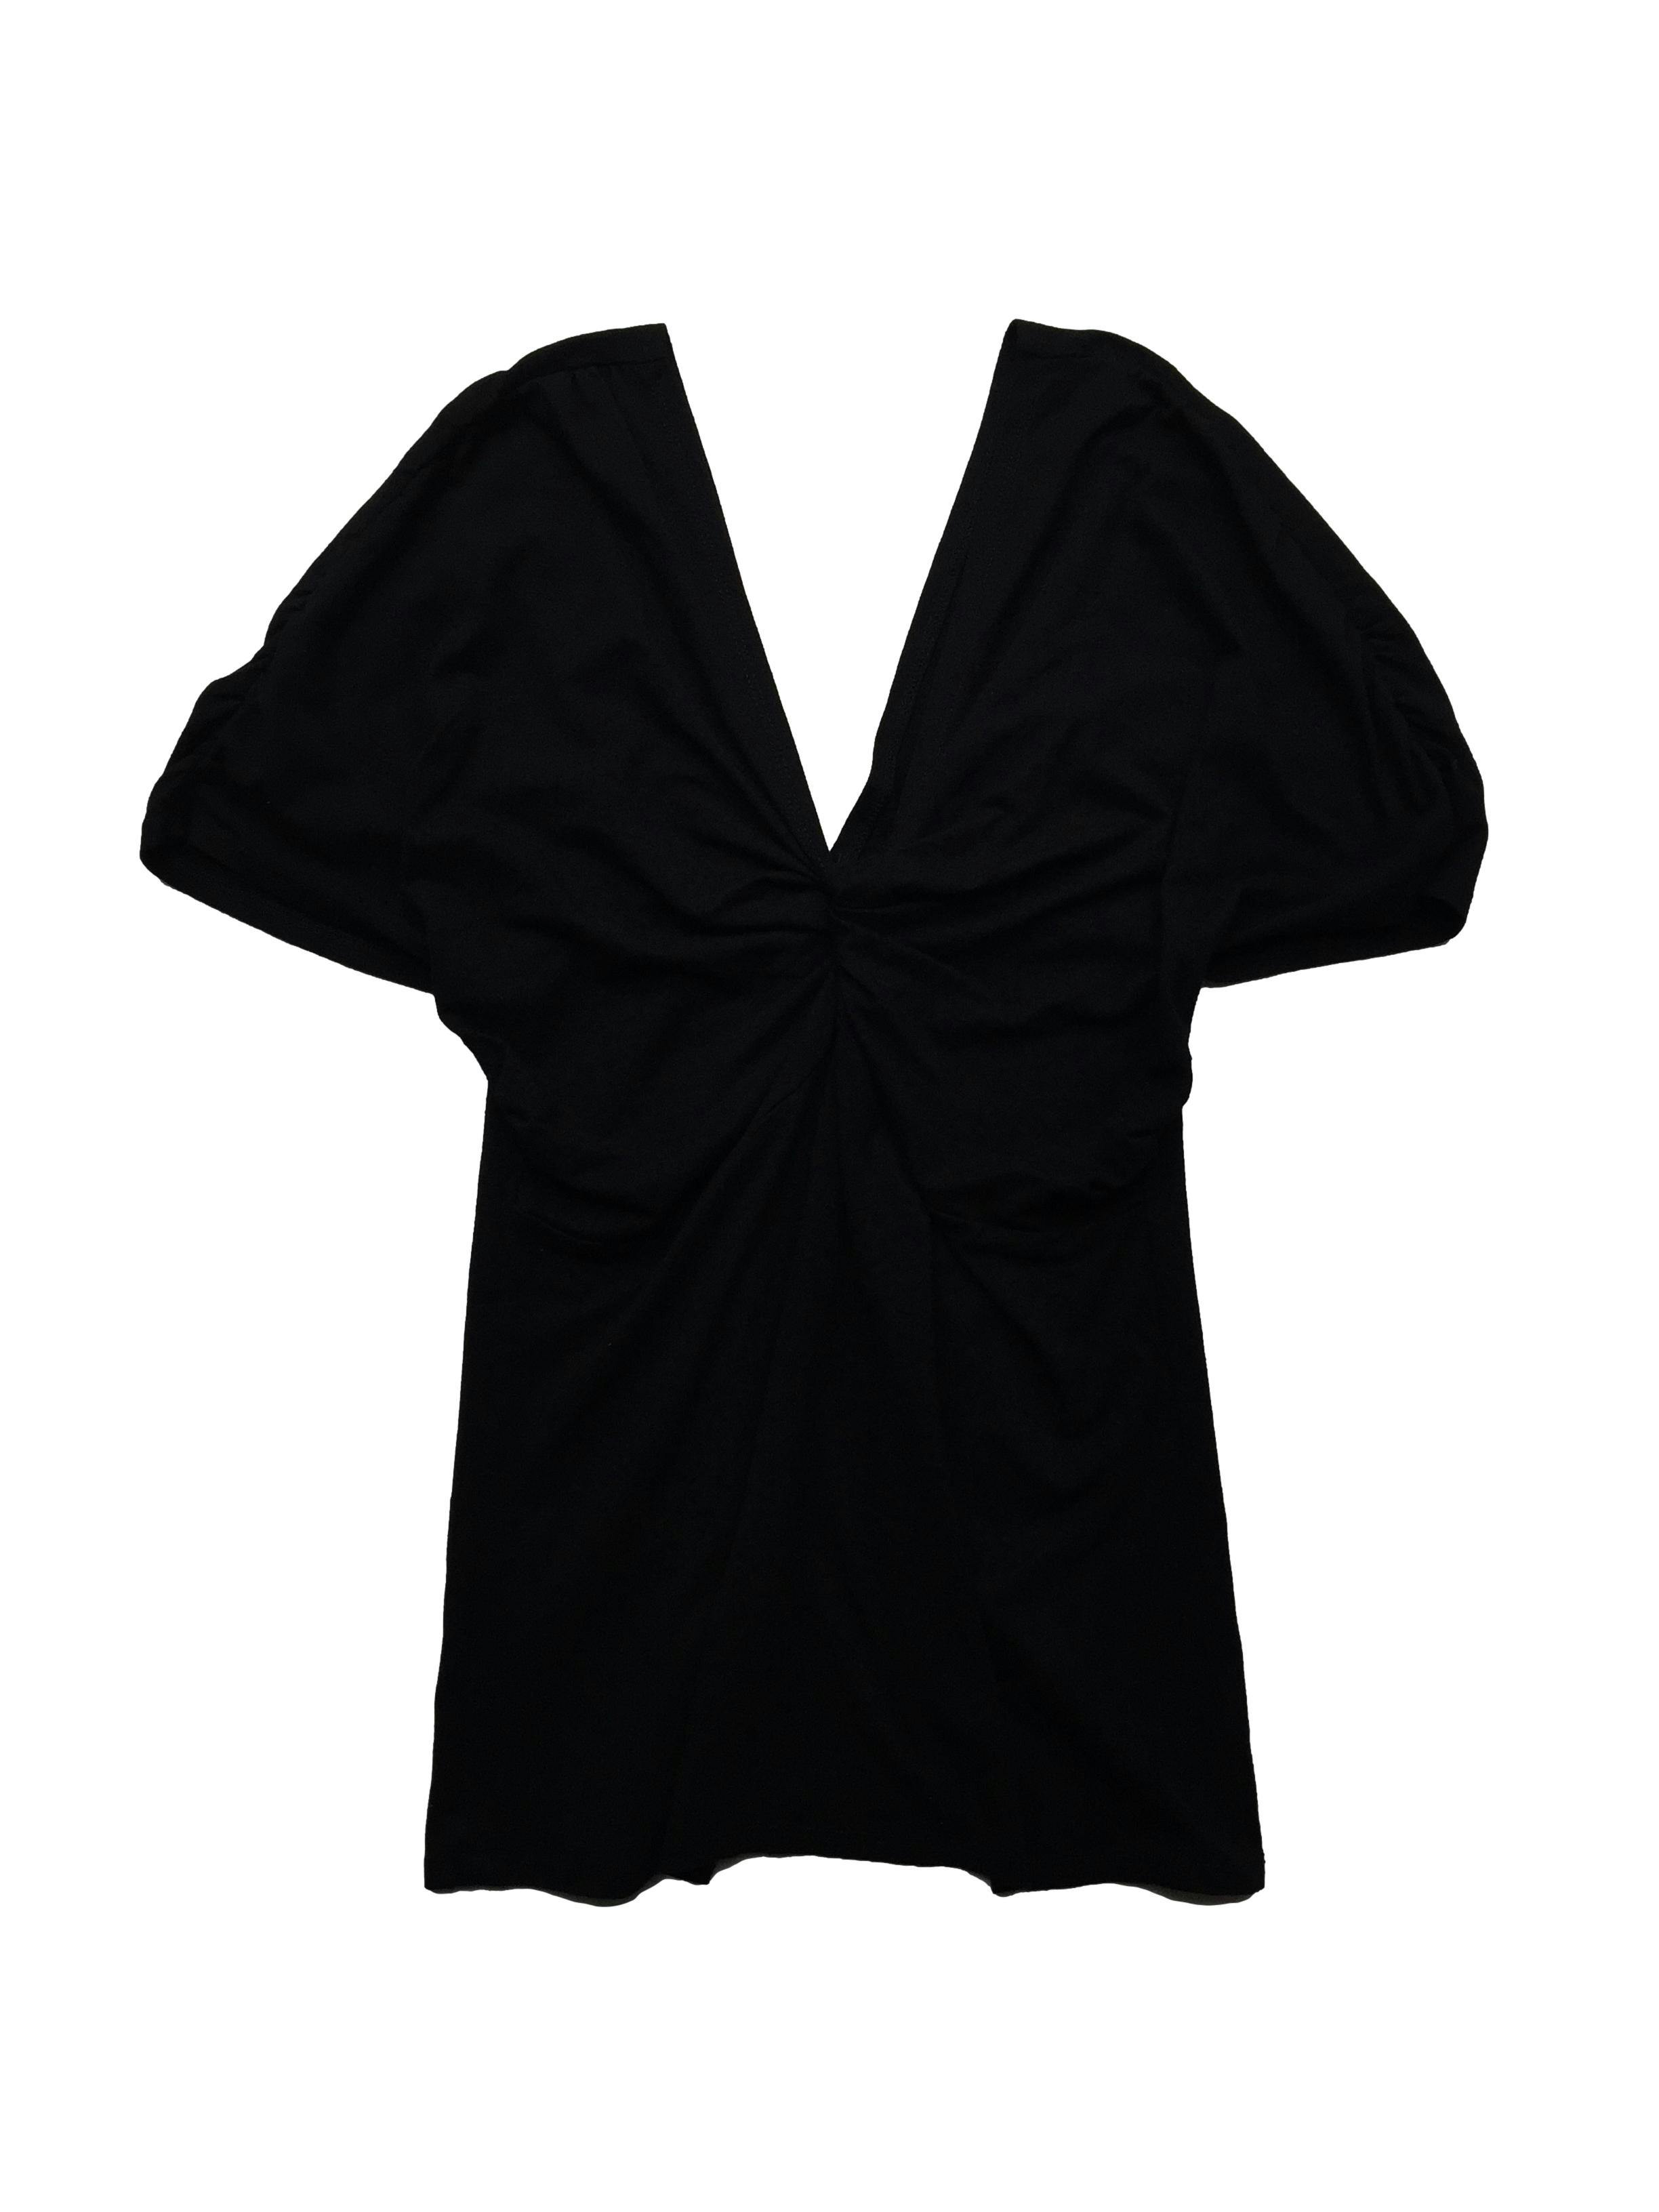 Polo negro tipo algodón stretch, escote pico en ambos lado con efecto nudo en pecho. Busto 85cm sin estirar Largo 62cm